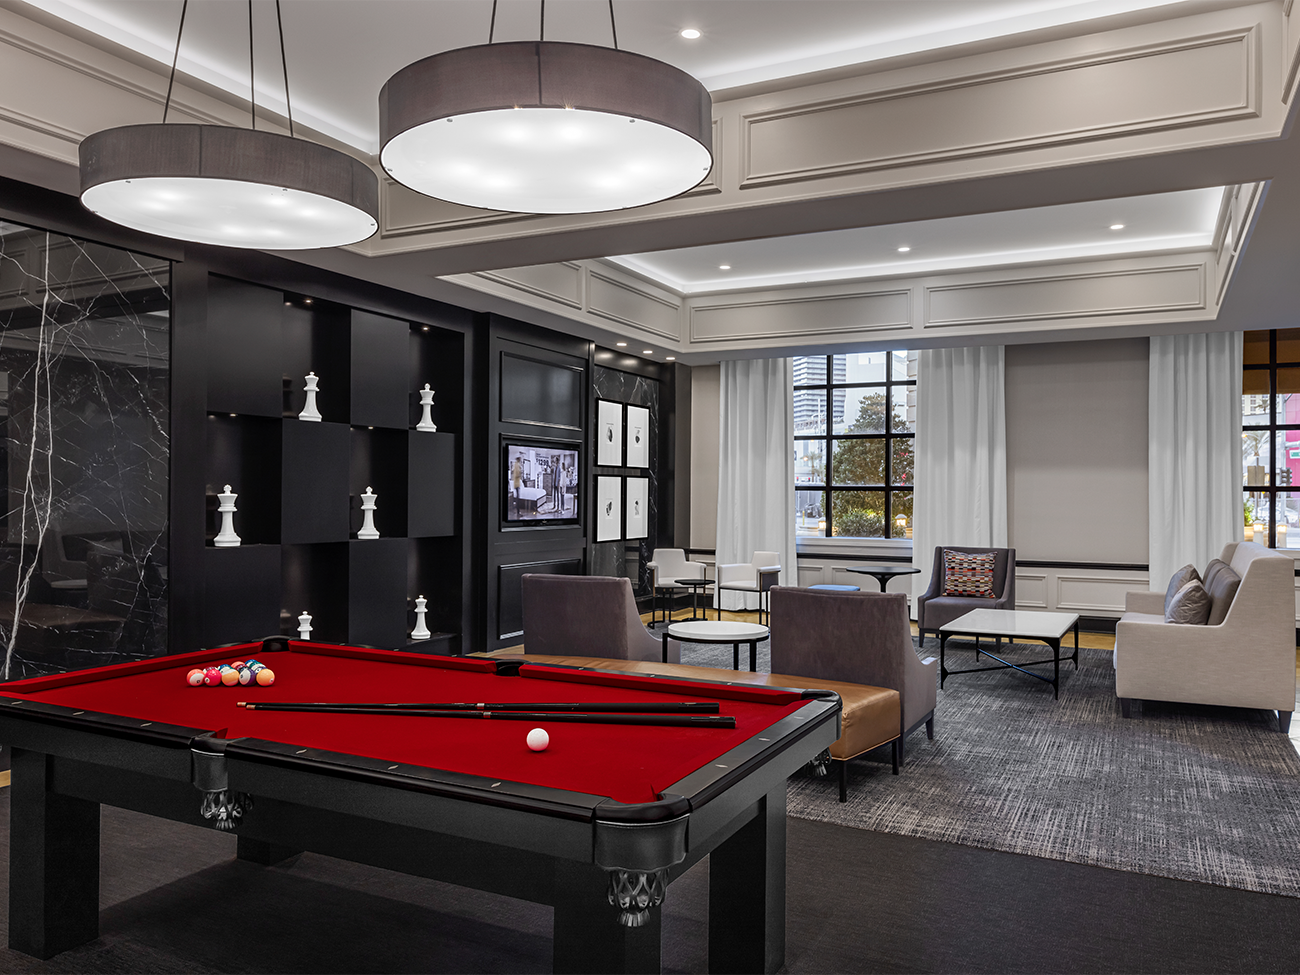 Lounge - Billiards Area